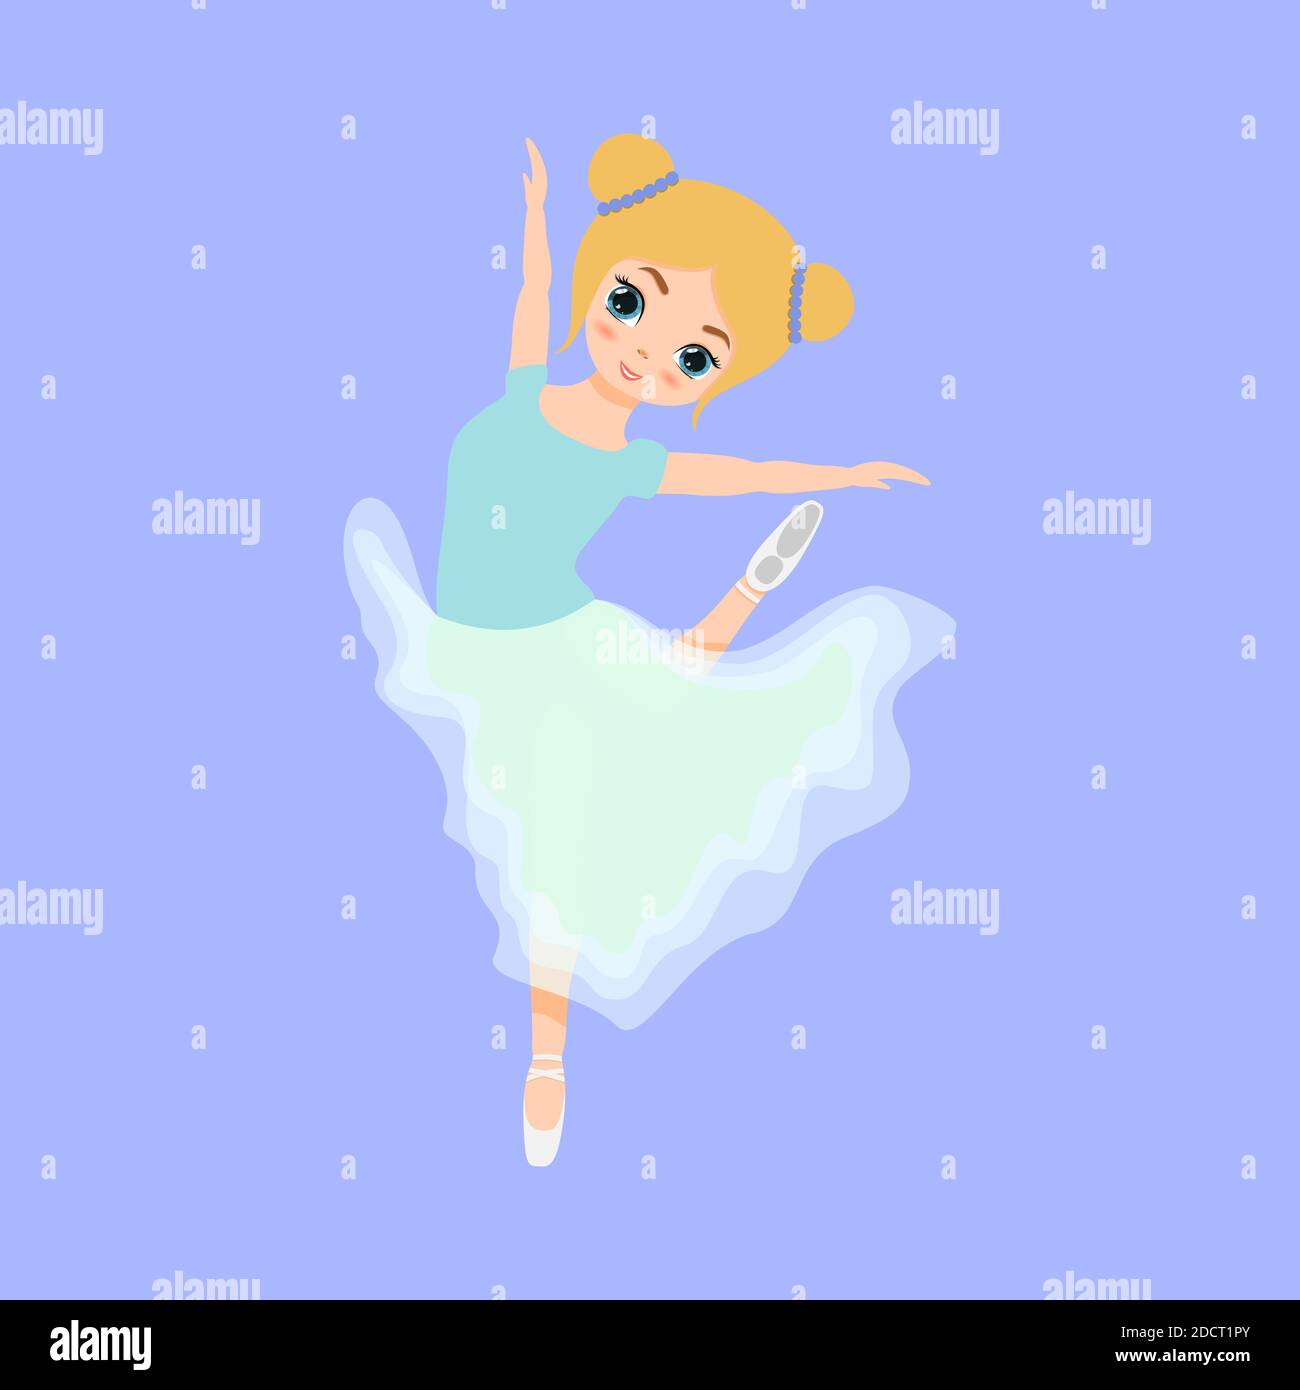 Jolie petite ballerine dansant. Ballerine fille en robe tutu bleue. Belle illustration de dessin animé à plat pour enfant isolée sur fond bleu. Illustration de Vecteur